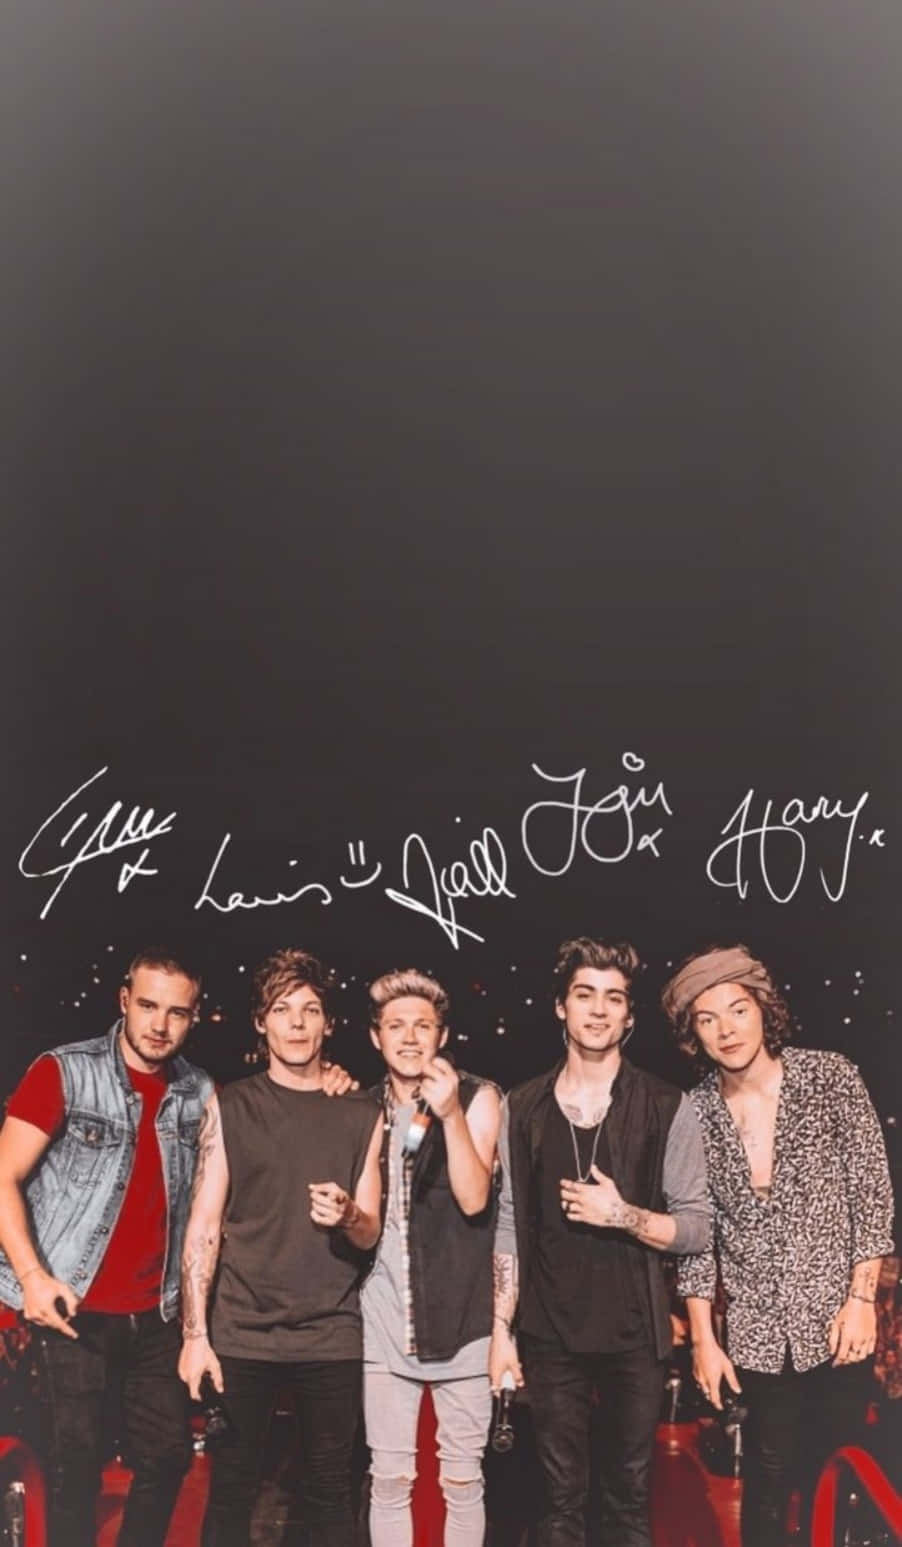 Mitgliedersignaturvon One Direction Iphone Wallpaper Wallpaper